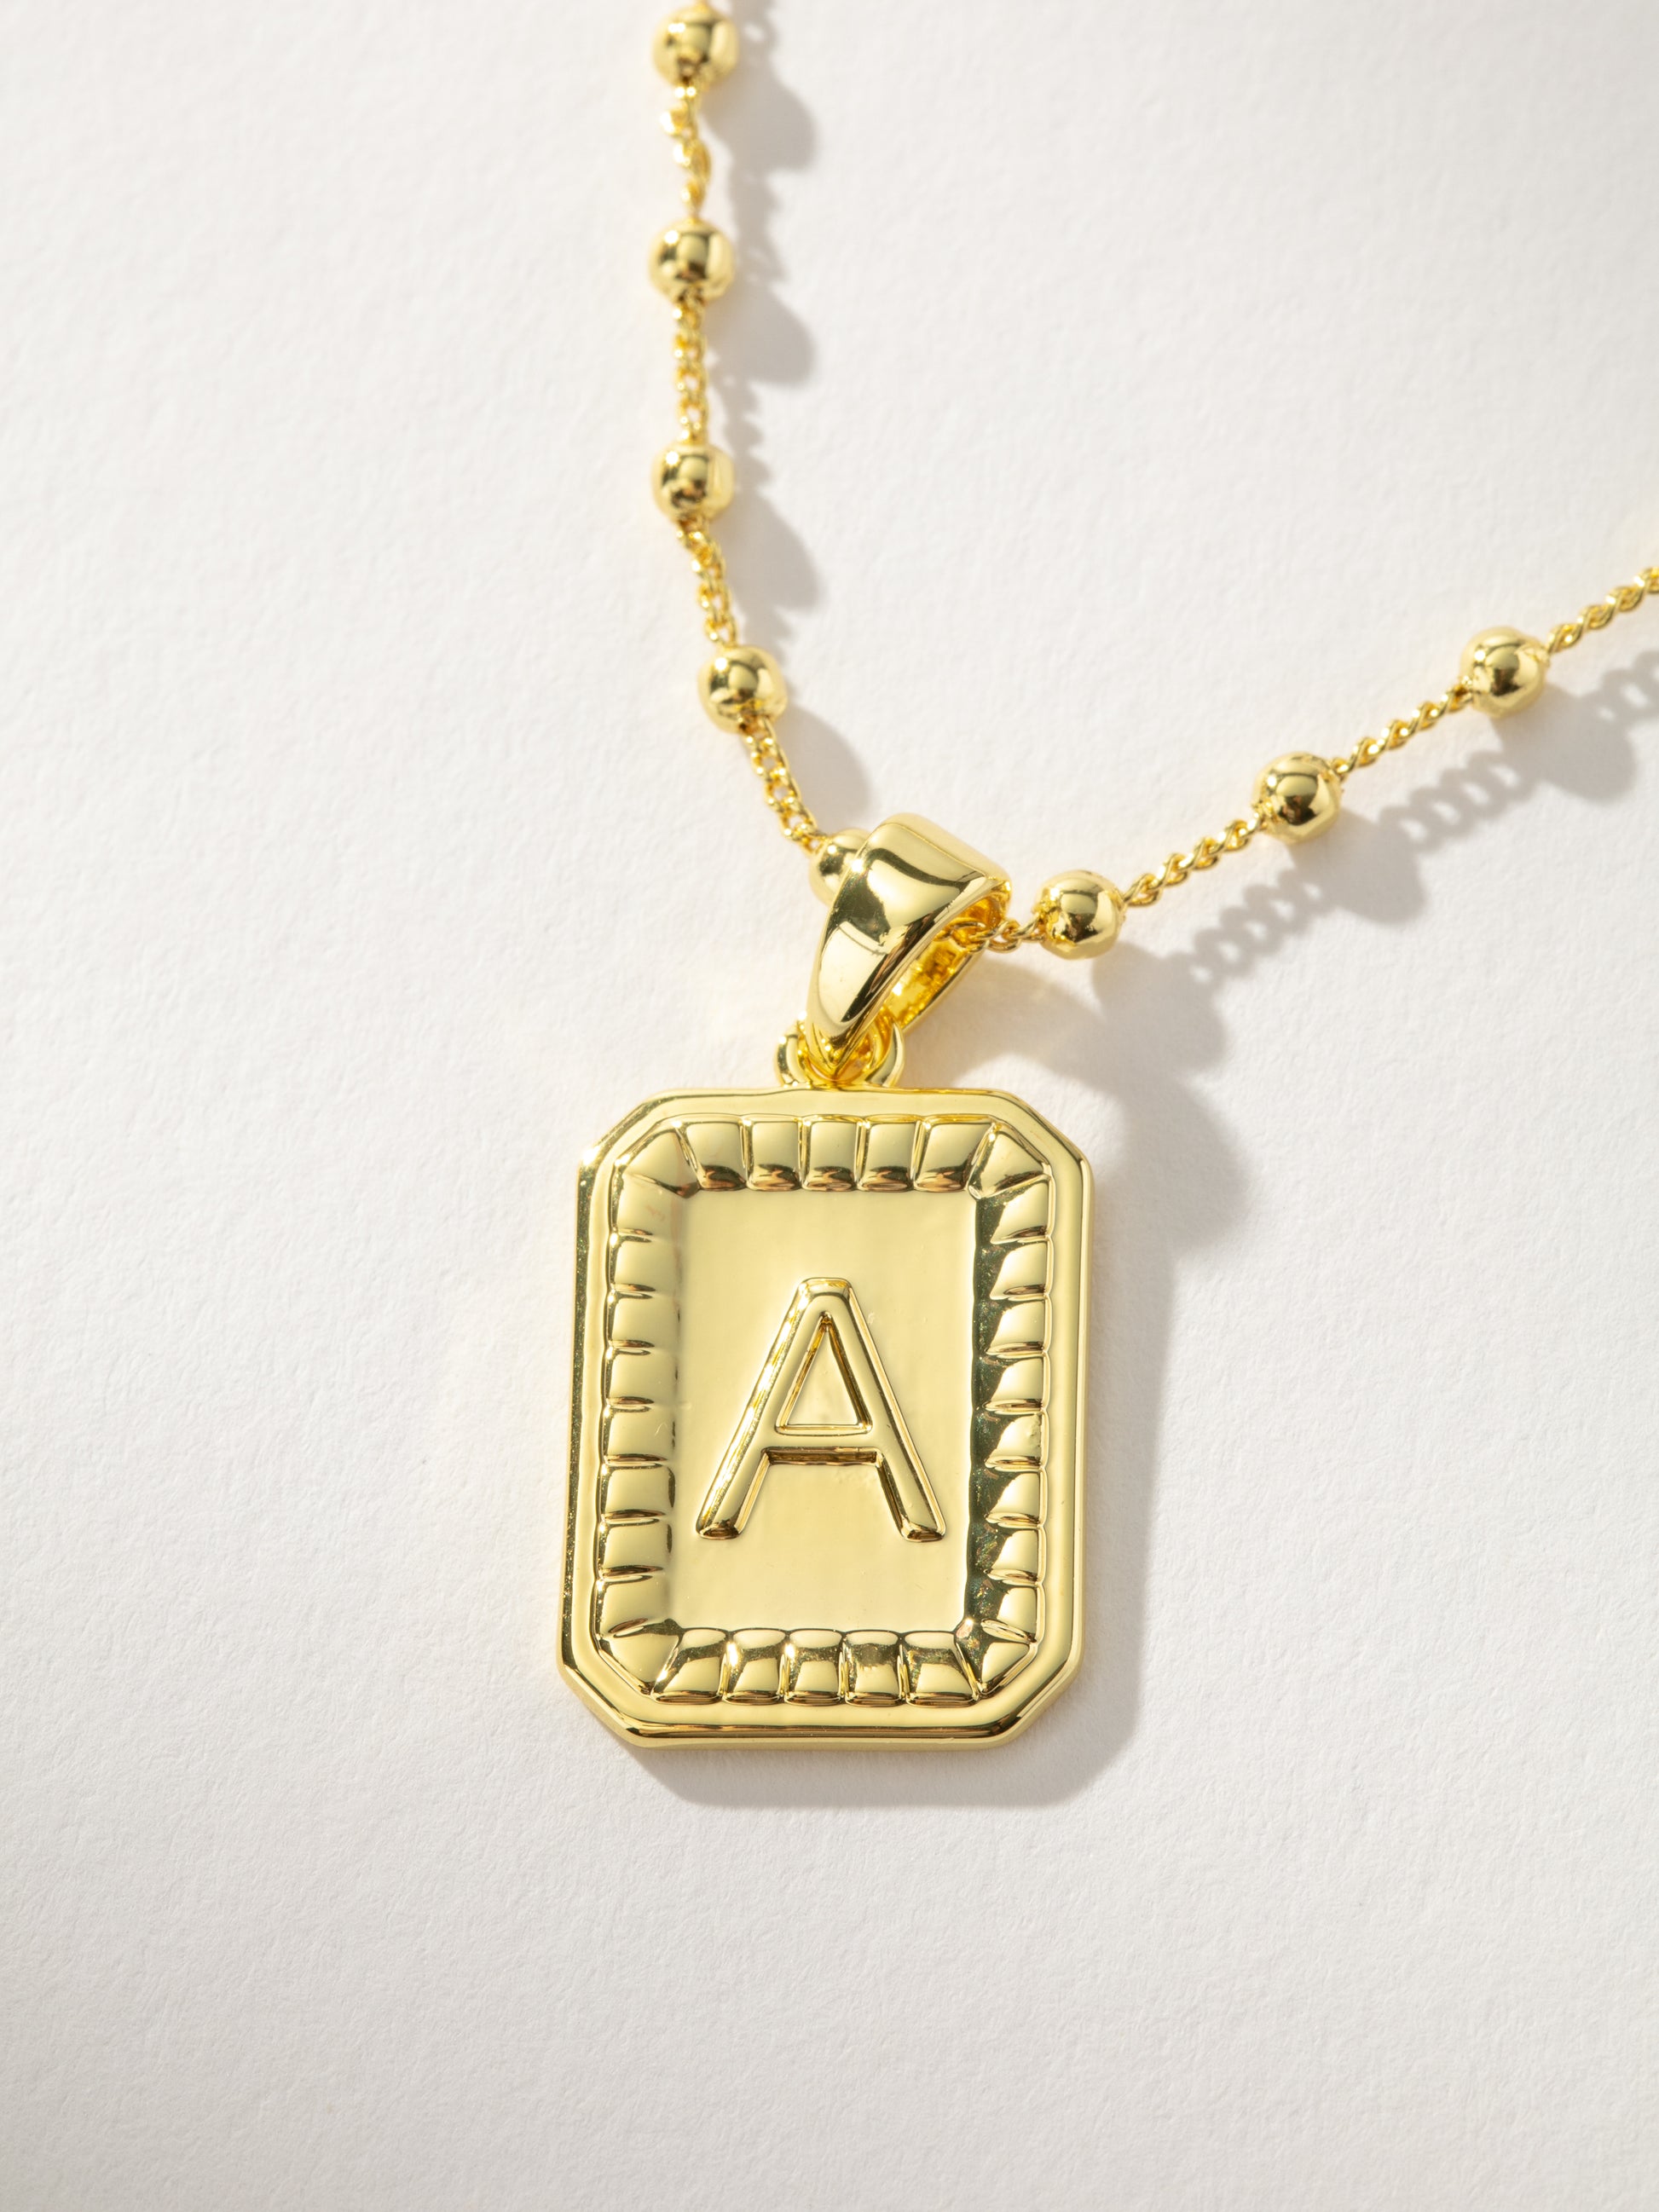 Sur Necklace | Gold A | Product Image | Uncommon James